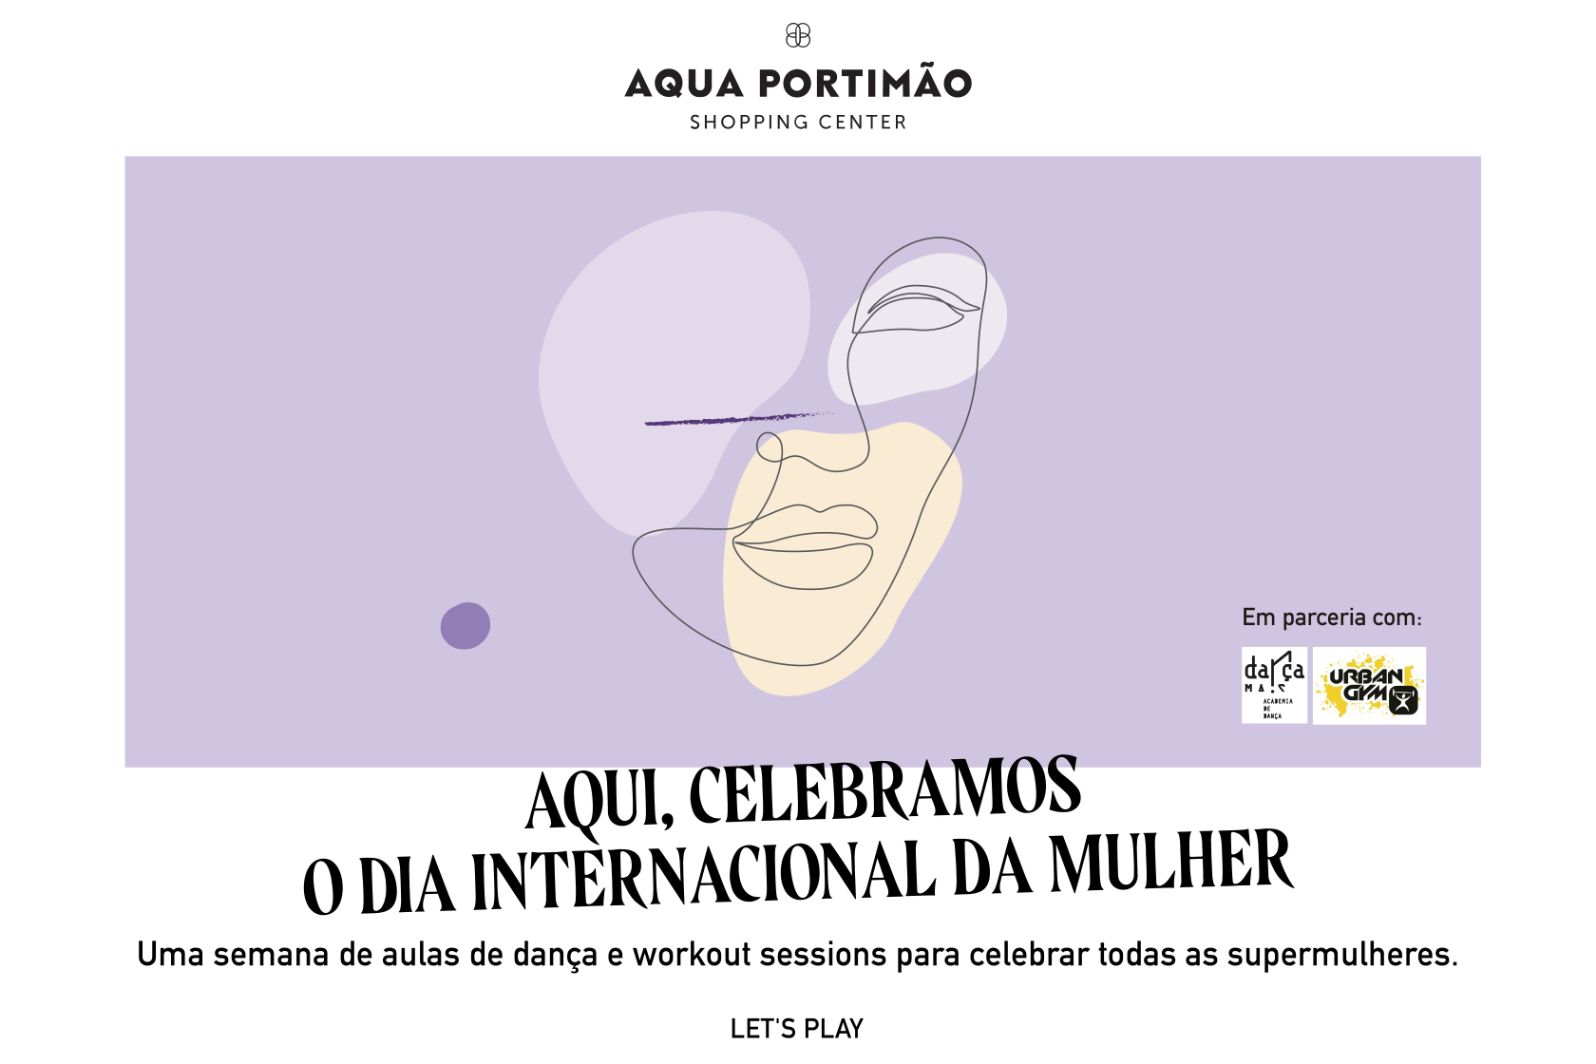 No Aqua Portimão o Dia da Mulher assinala-se durante toda a semana com actividades de bem-estar e empoderamento